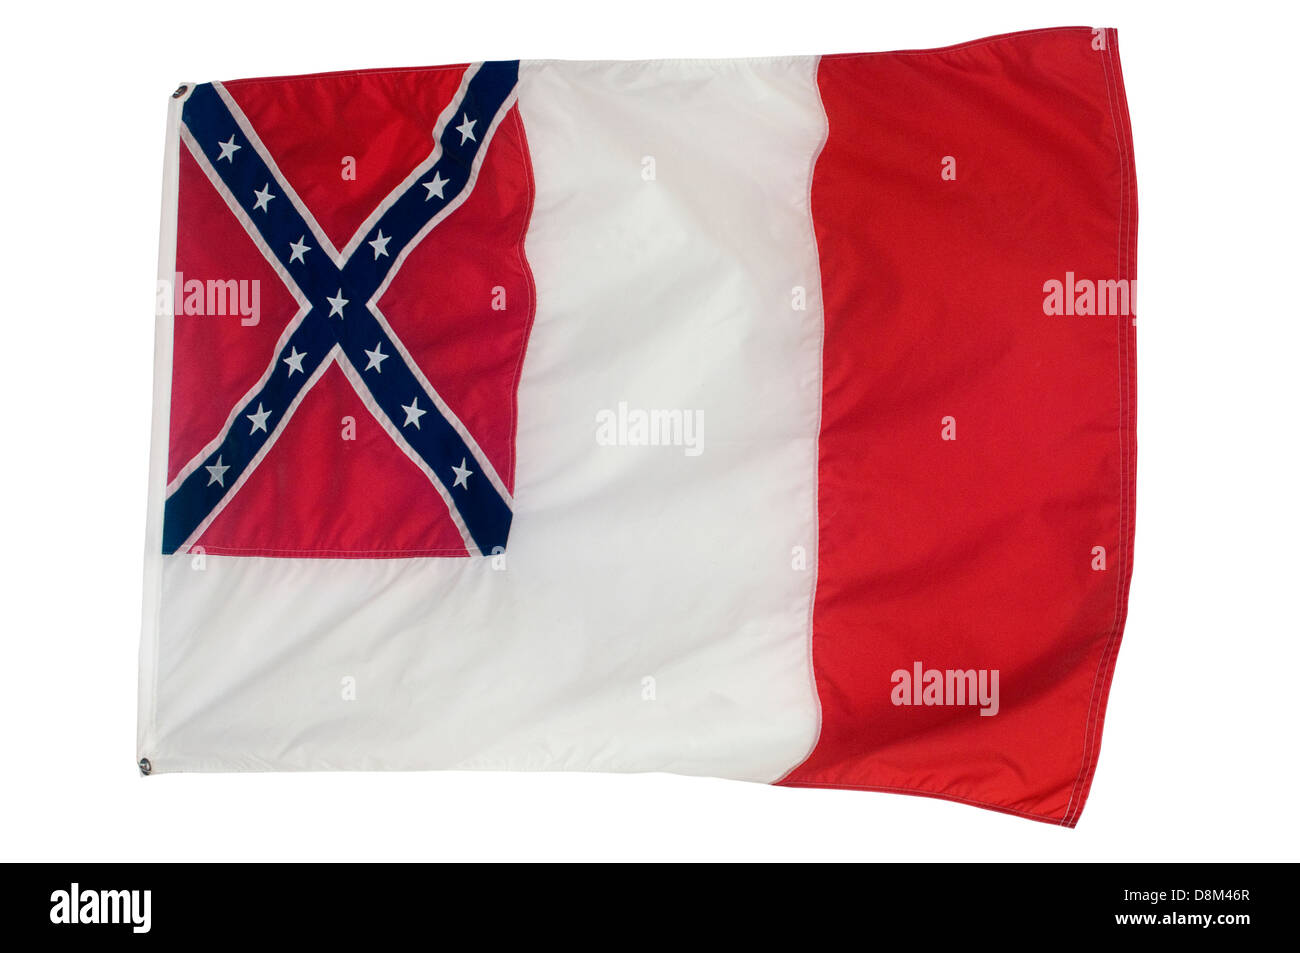 Dritte Confederate Flag, Die "Blutbefleckte banner" von 1865, Fort Pillow State Park, Tennessee. Digitale Fotografie Stockfoto